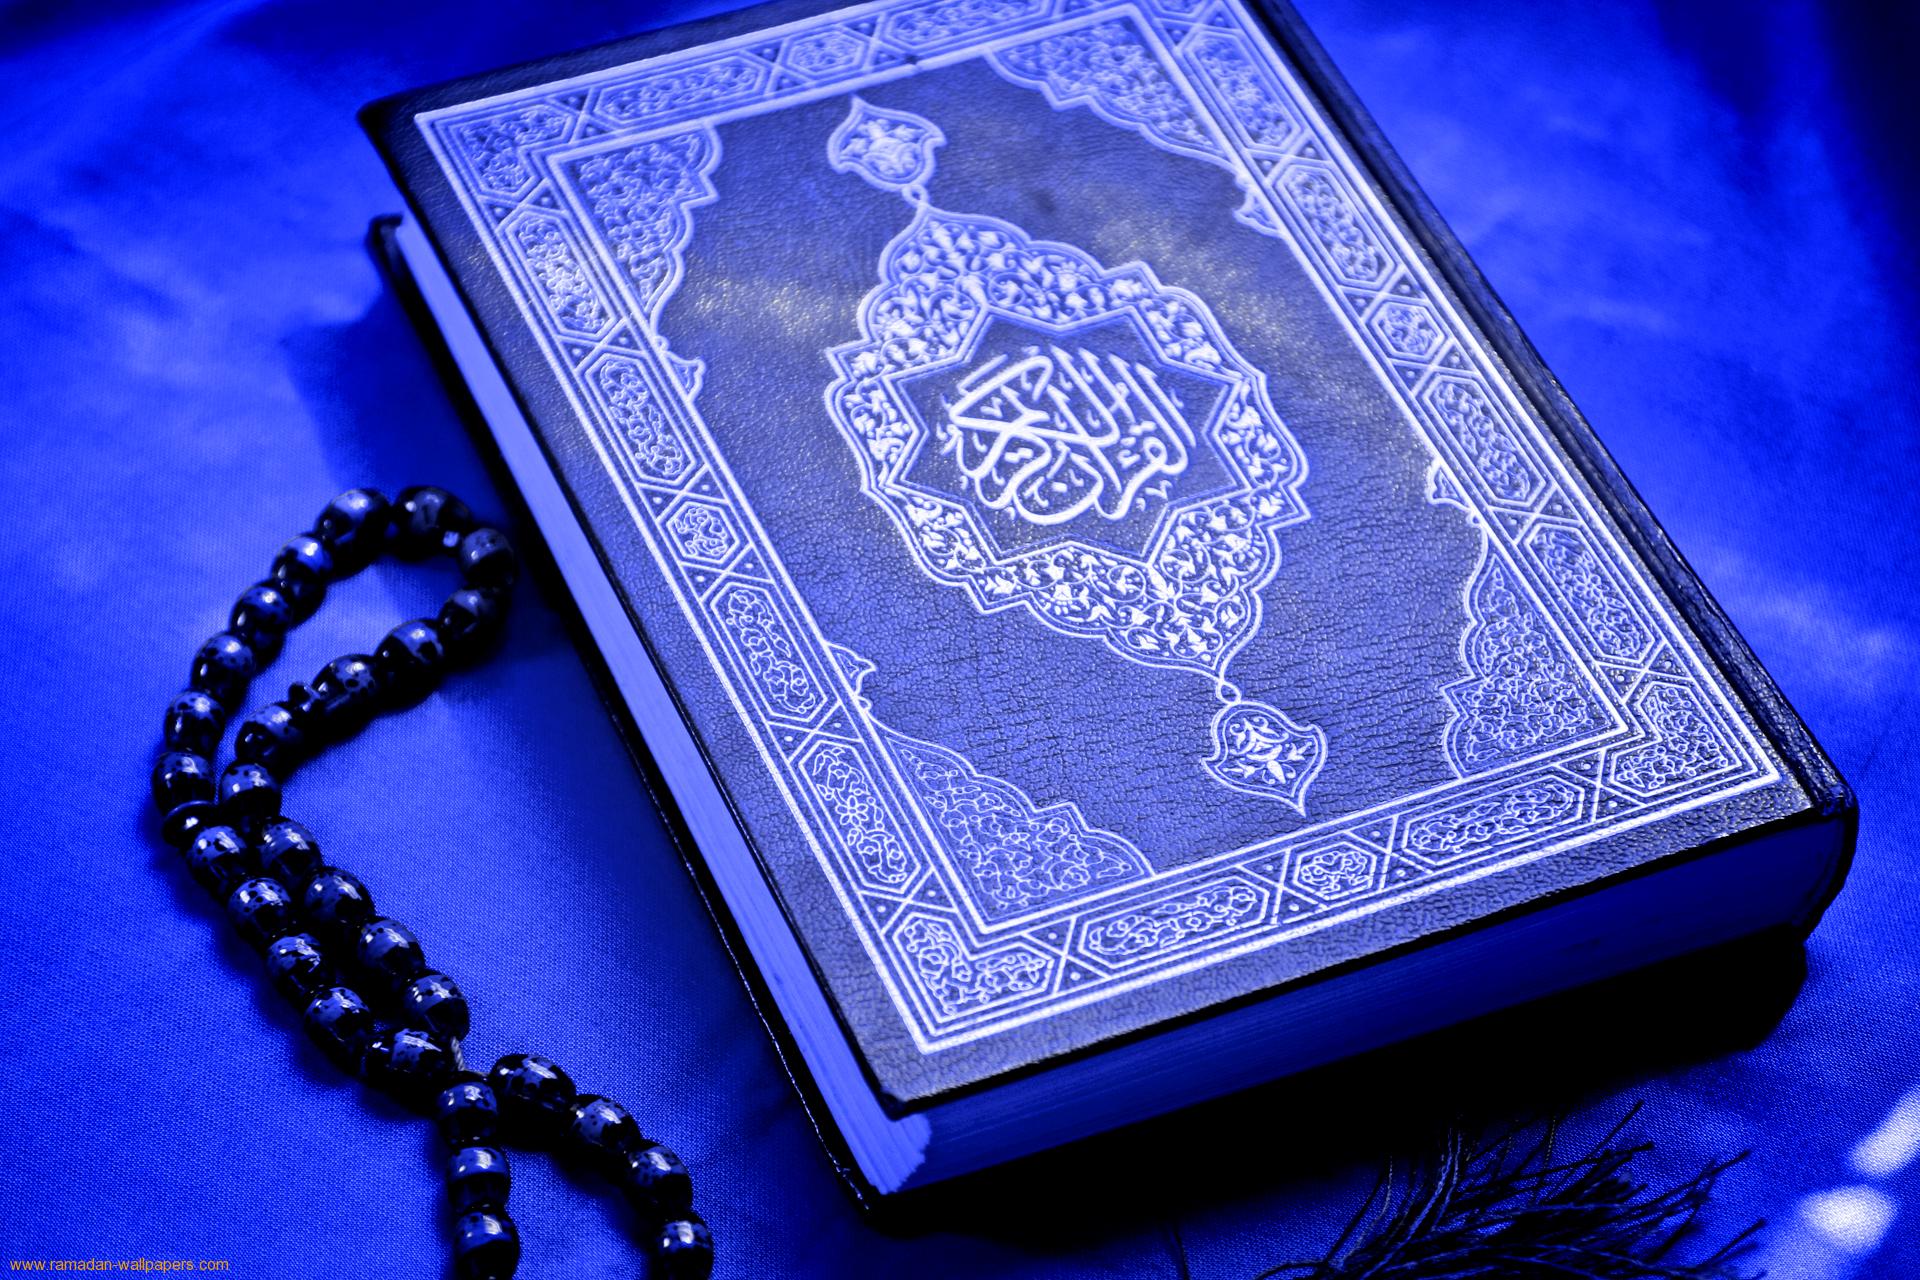 دلیل نزول قرآن چیست؟